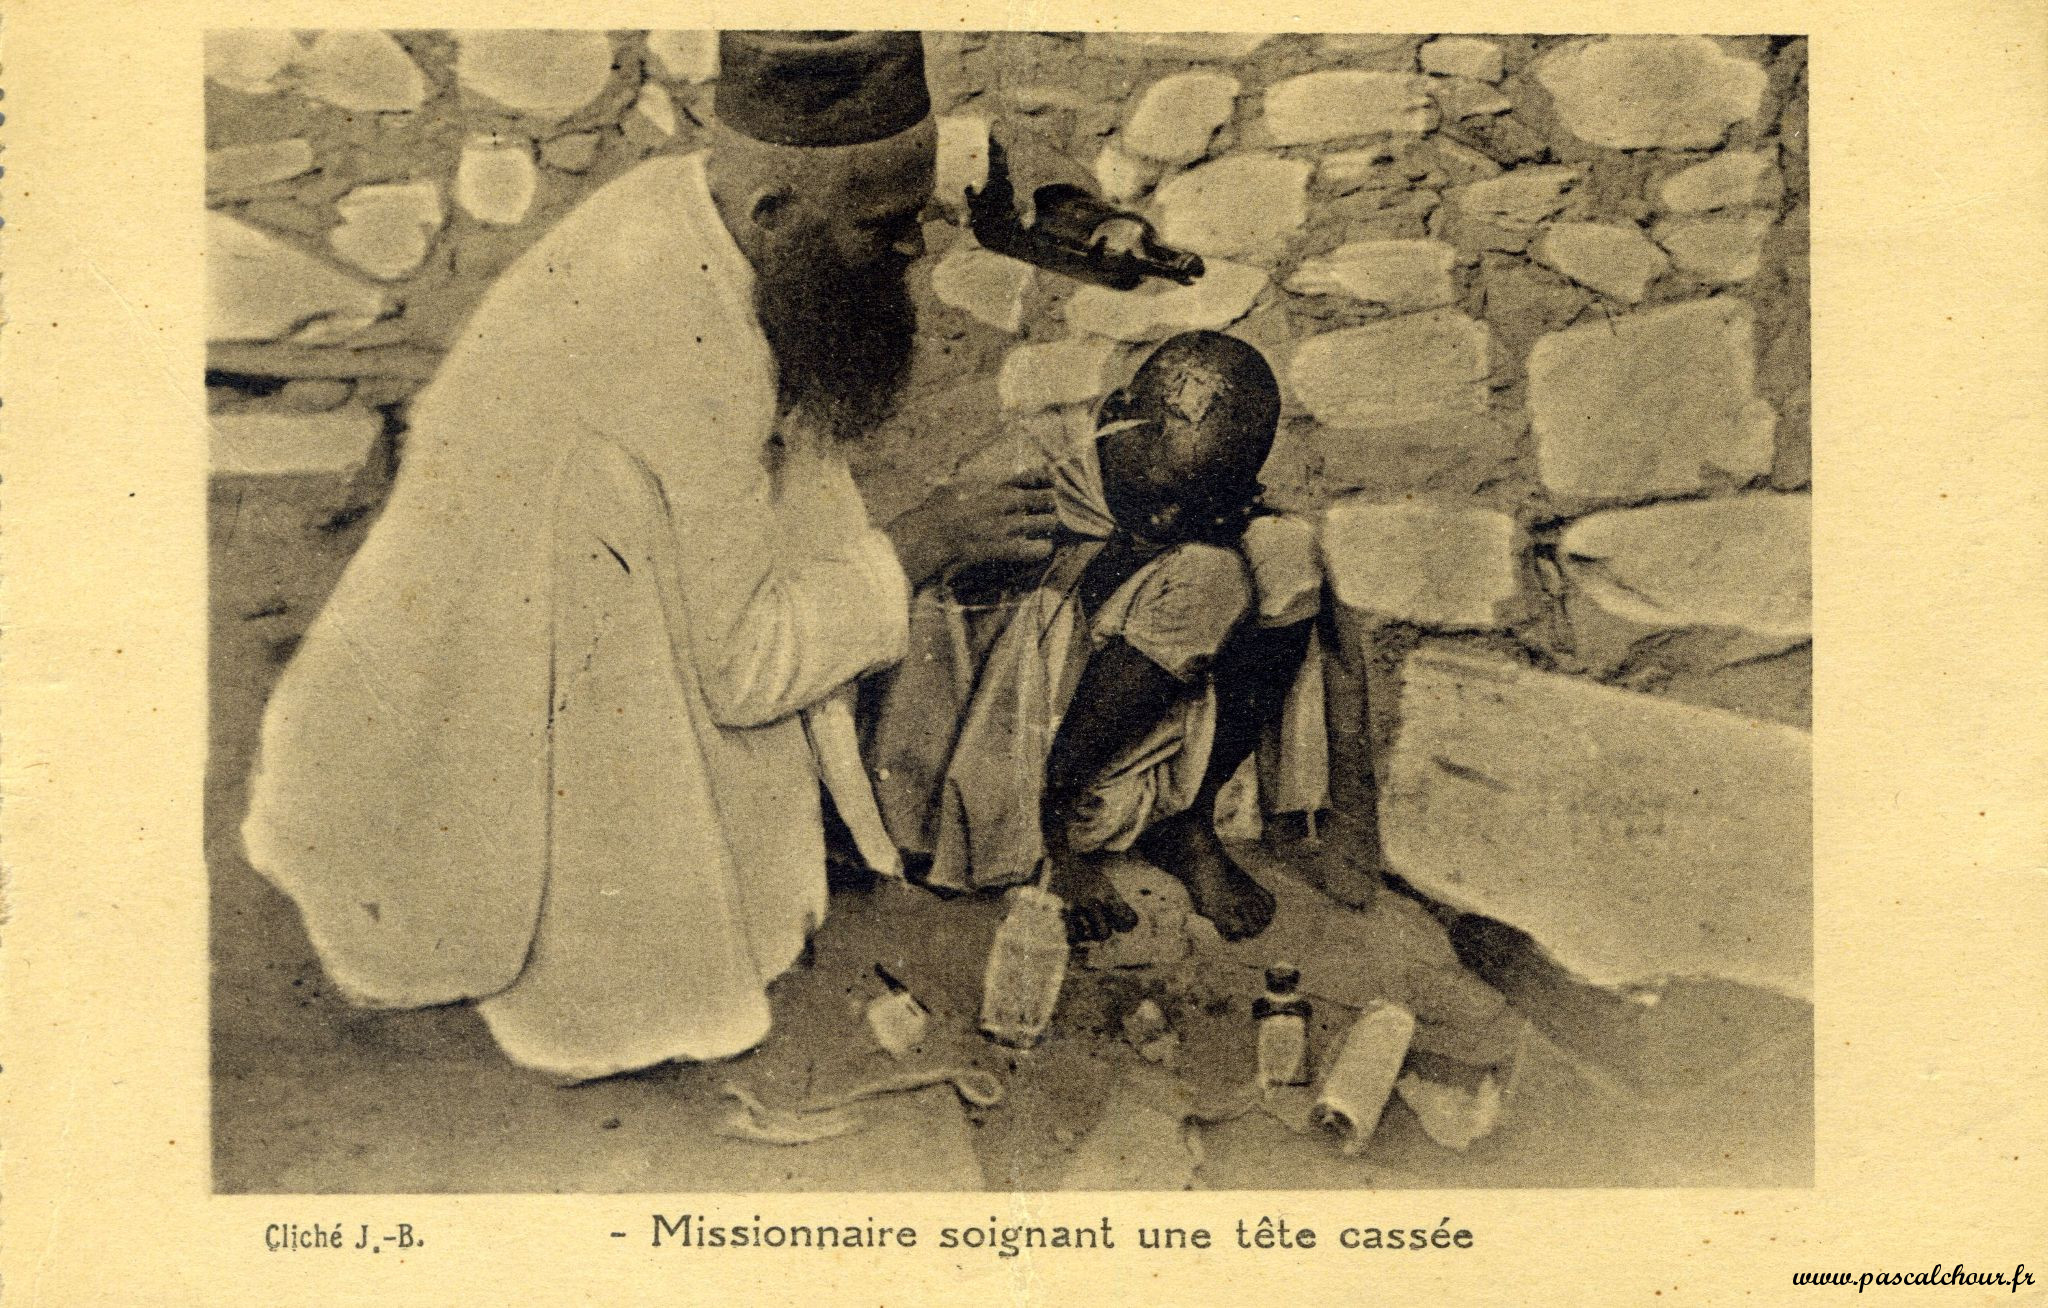 Le Caire, missionnaire en train de soigner